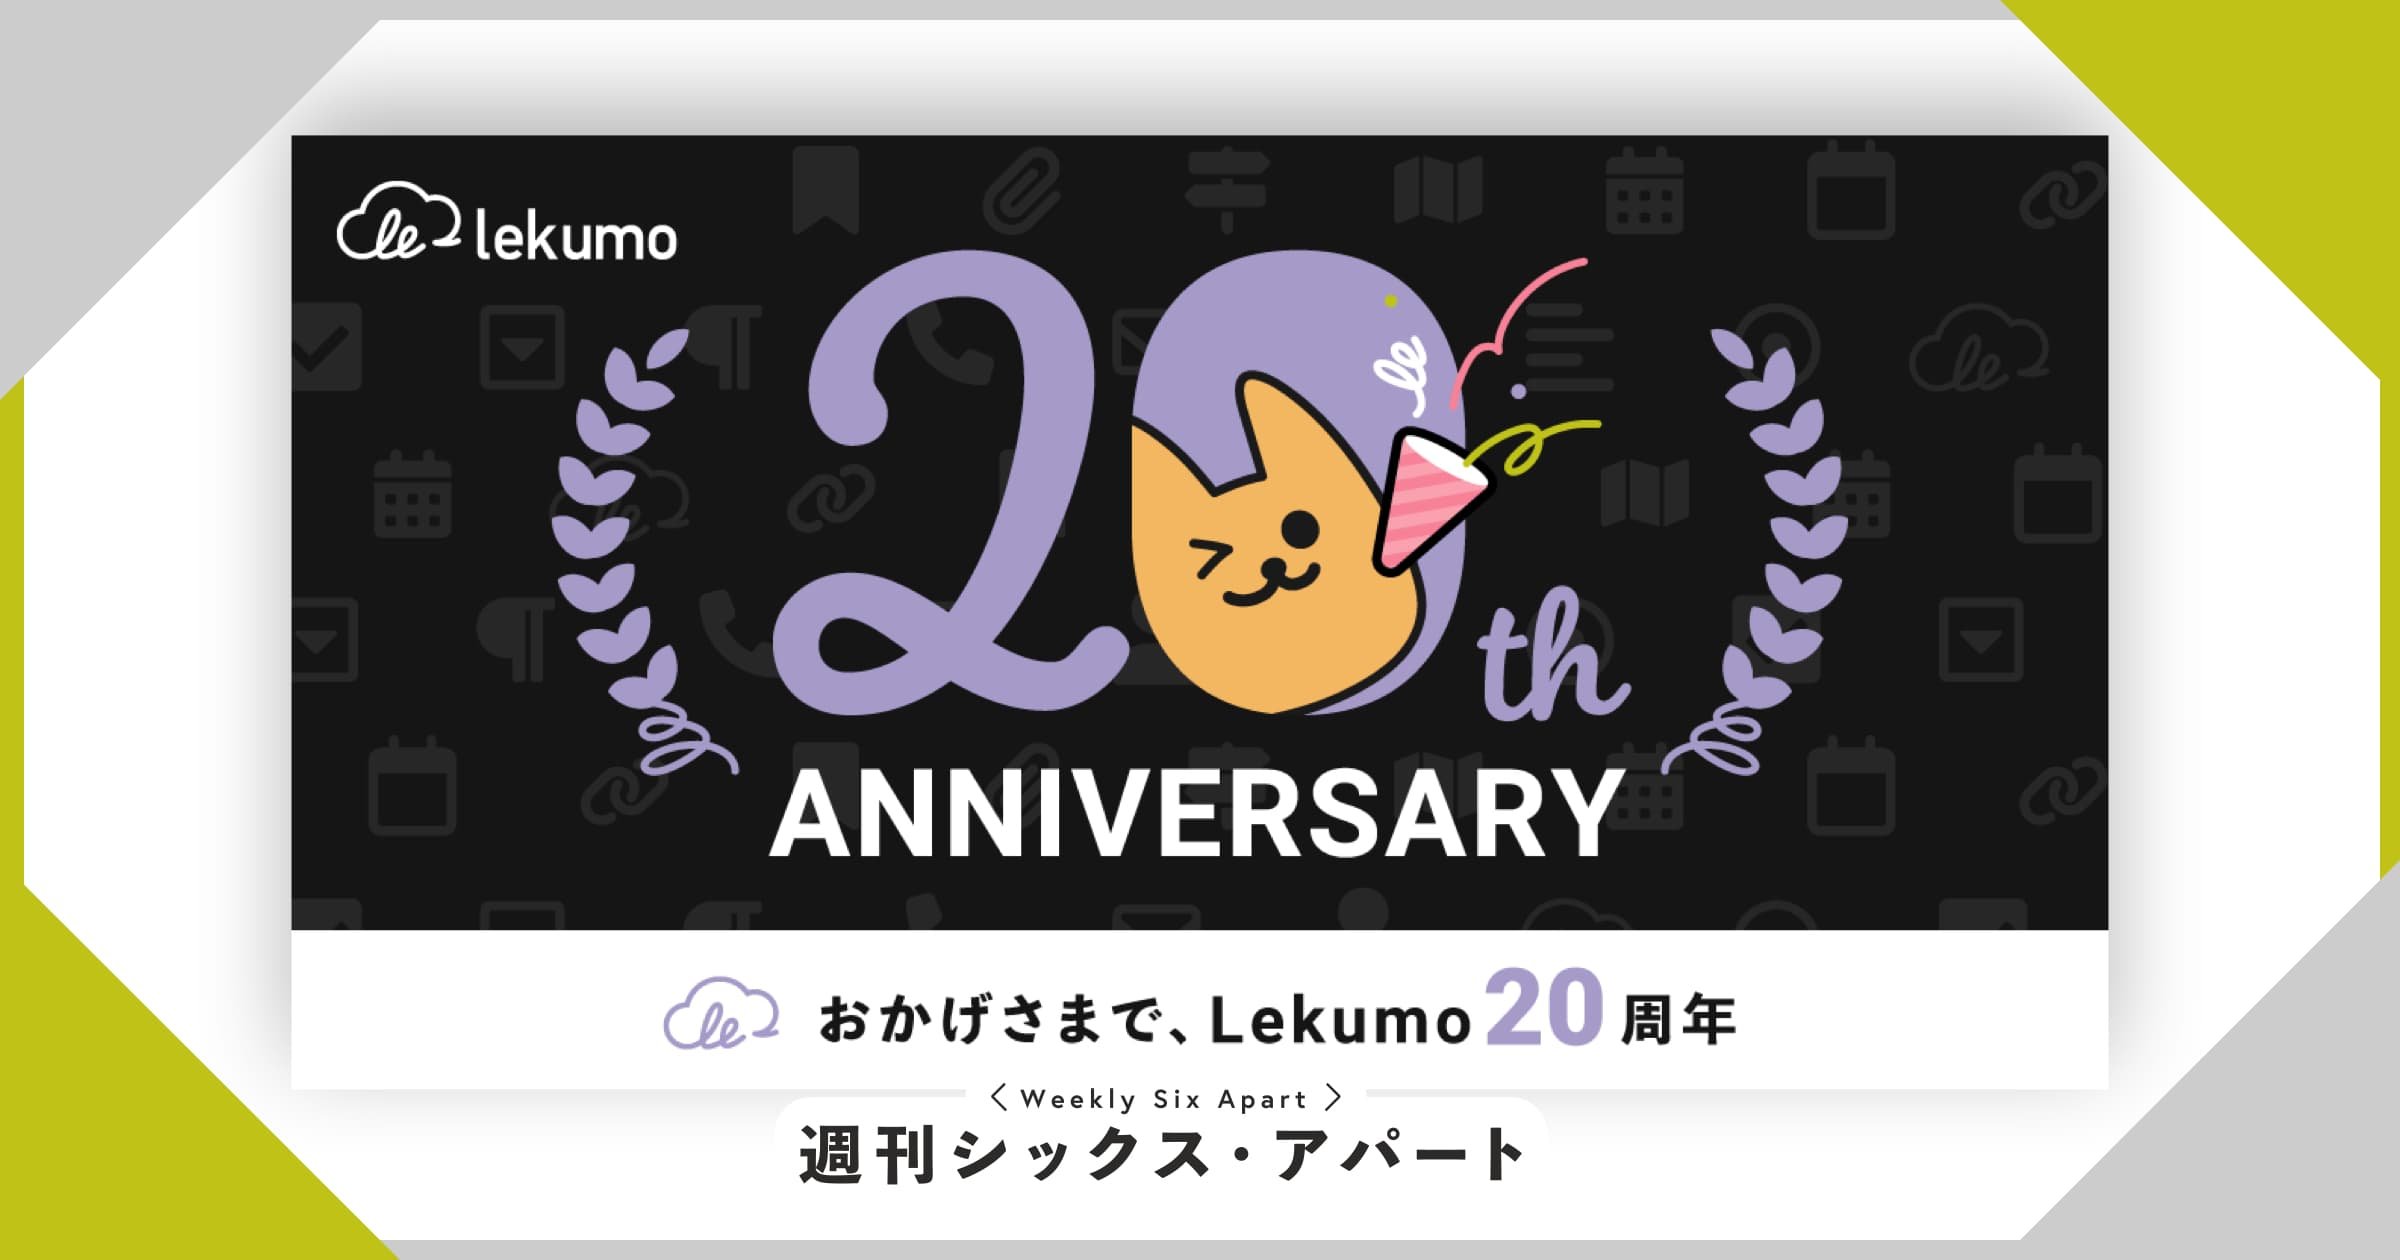 6月30日に、Lekumo 20周年を迎えました！ #週刊SA 